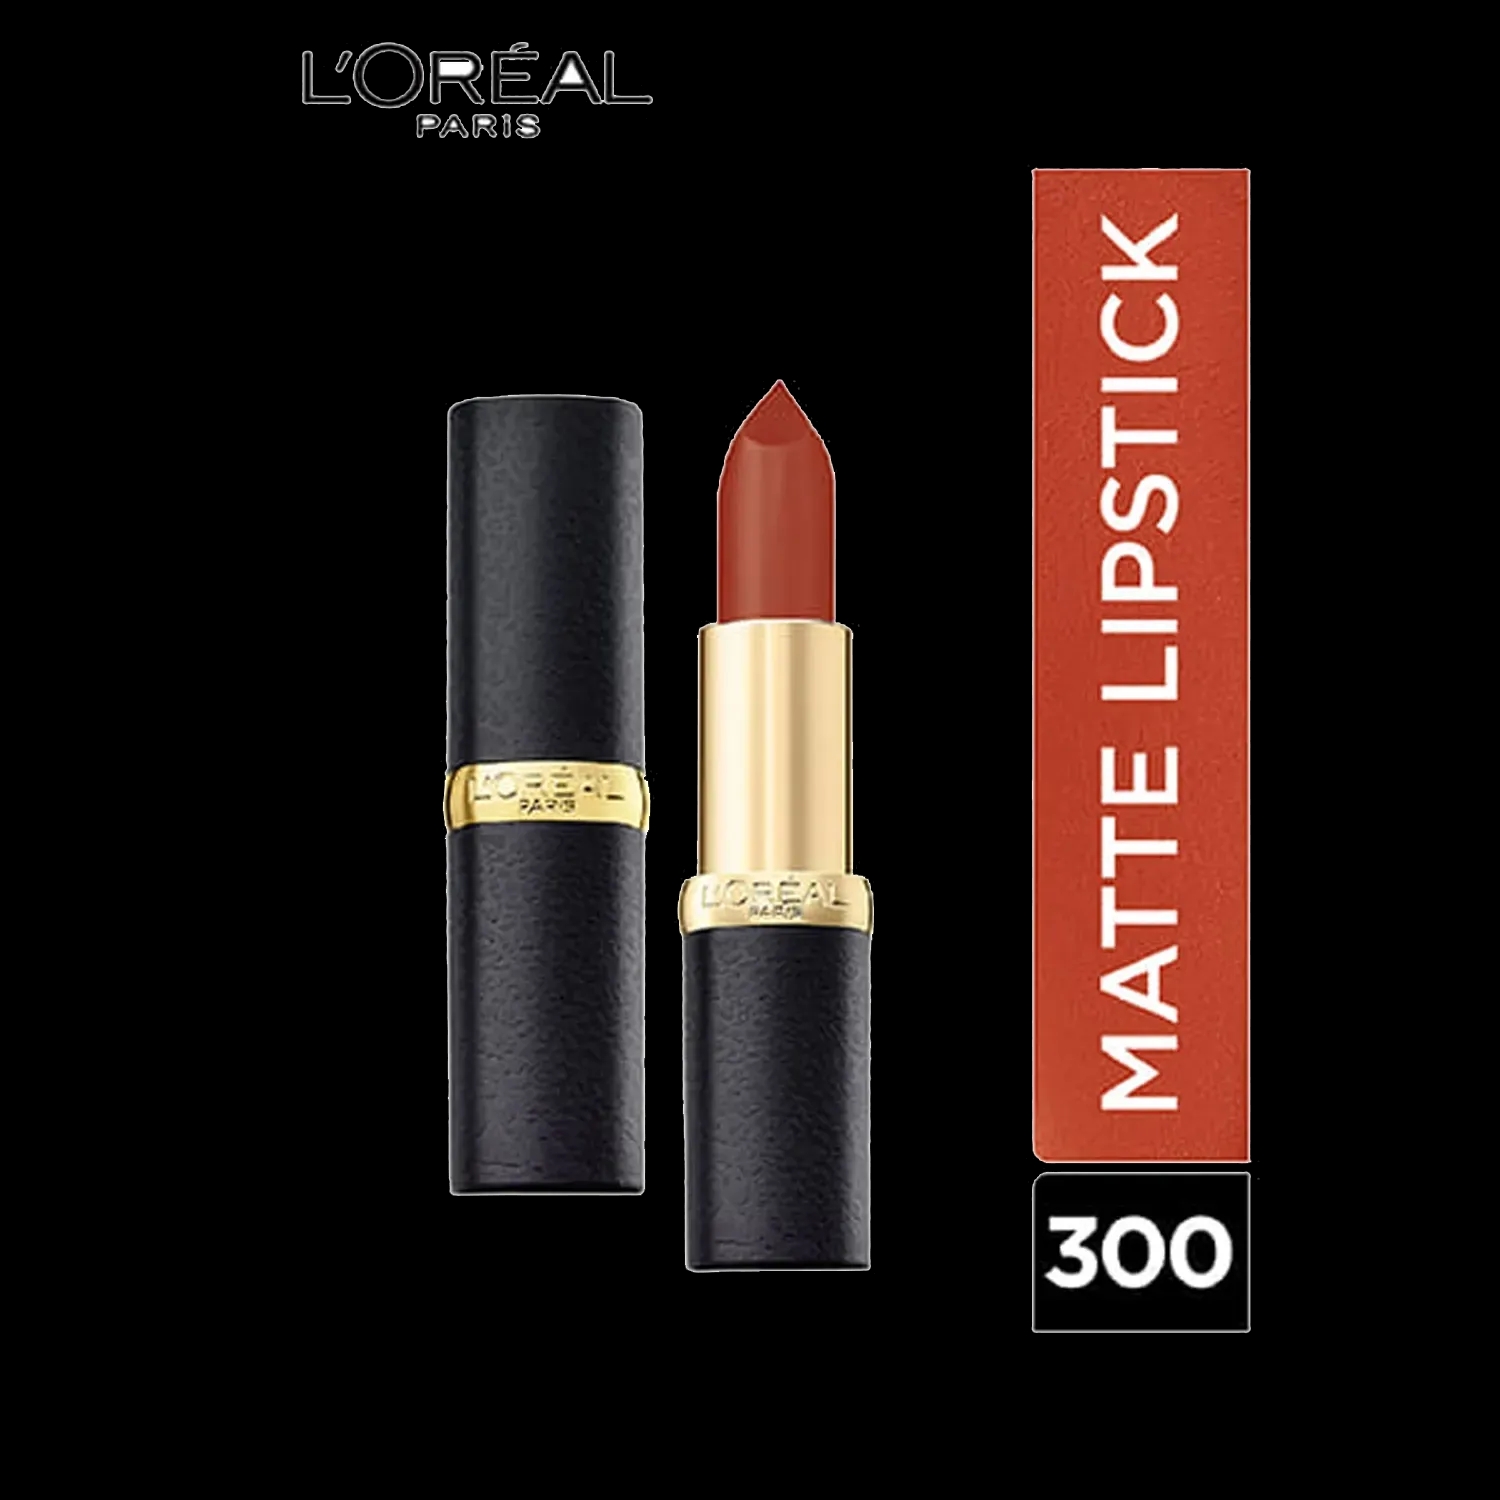 L'Oreal Paris | L'Oreal Paris Color Riche Moist Matte Lipstick, 300 Flaming Cloud, 3.7g